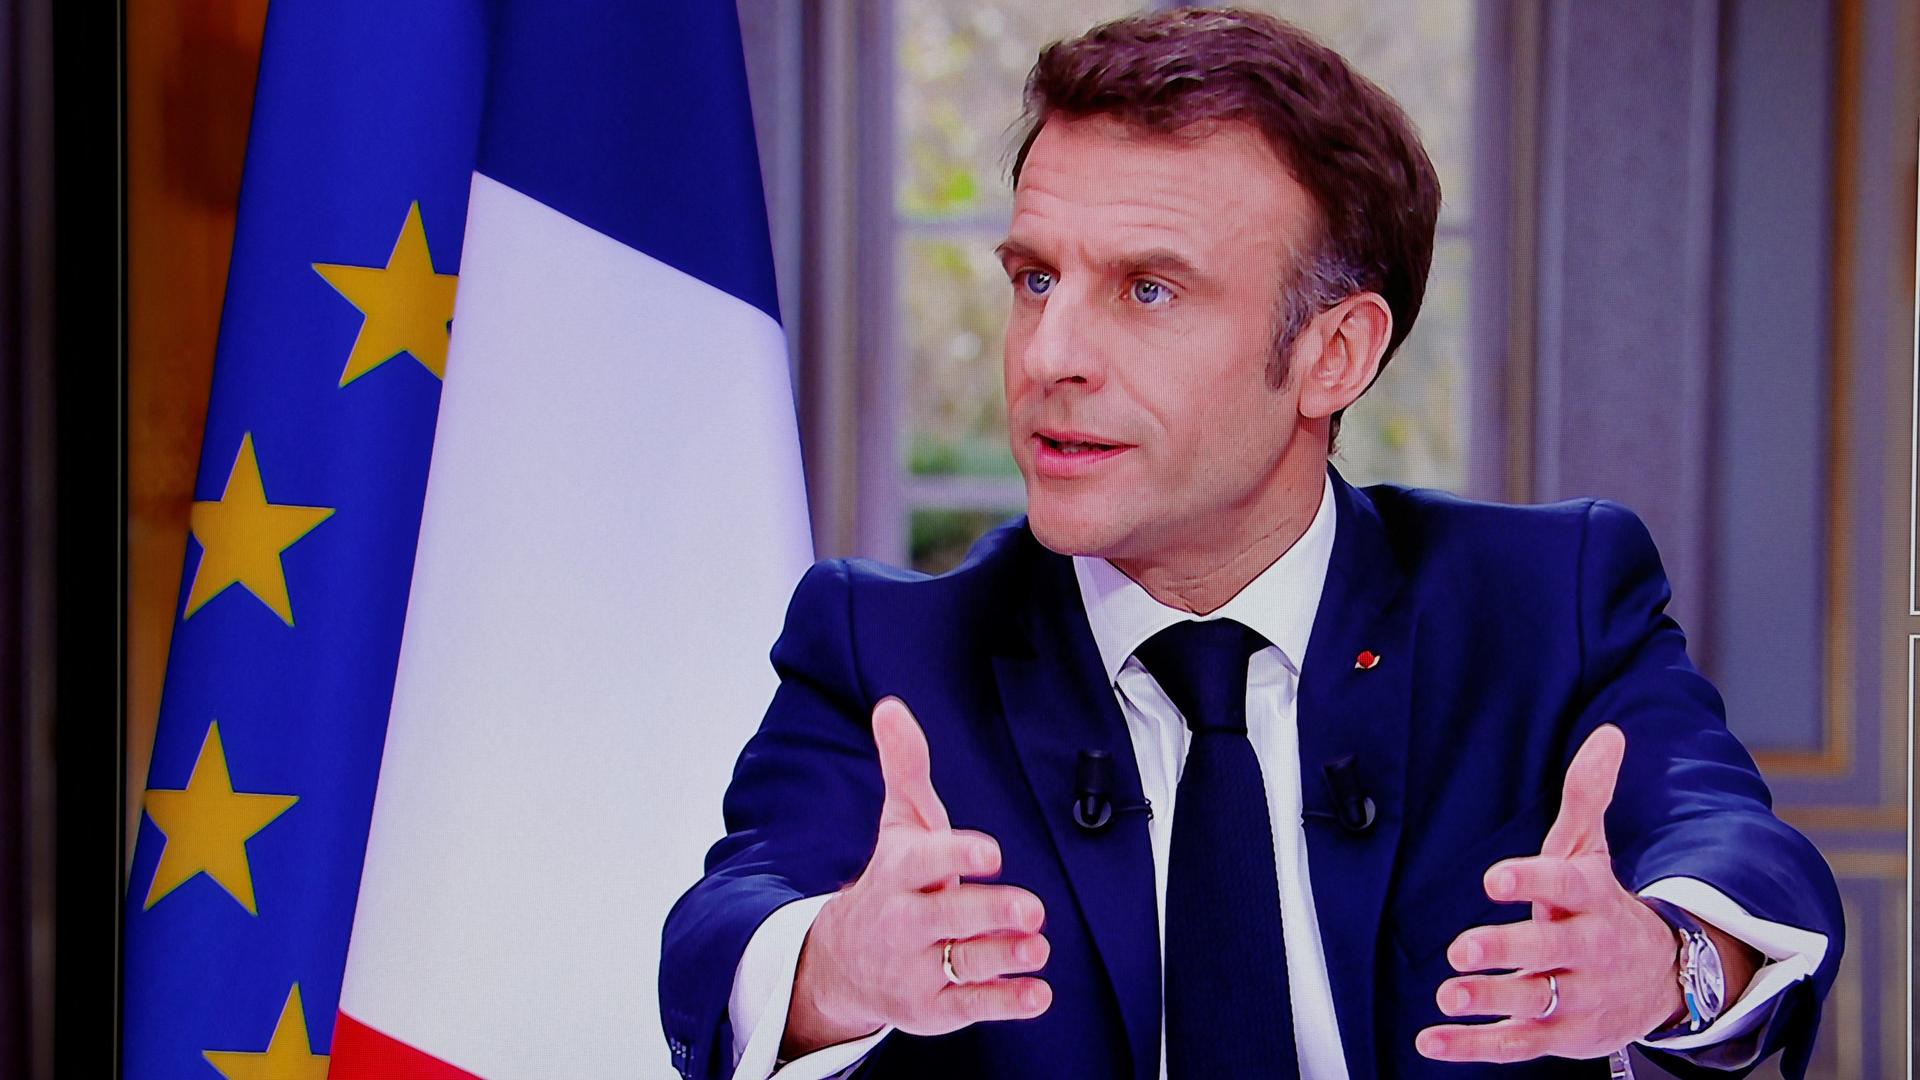 Frankreich, Paris: Präsident Emmanuel Macron spricht bei einem Fernsehen-Interview im Elysee Palast. Er hält beide Arme vor sich und gestikuliert.